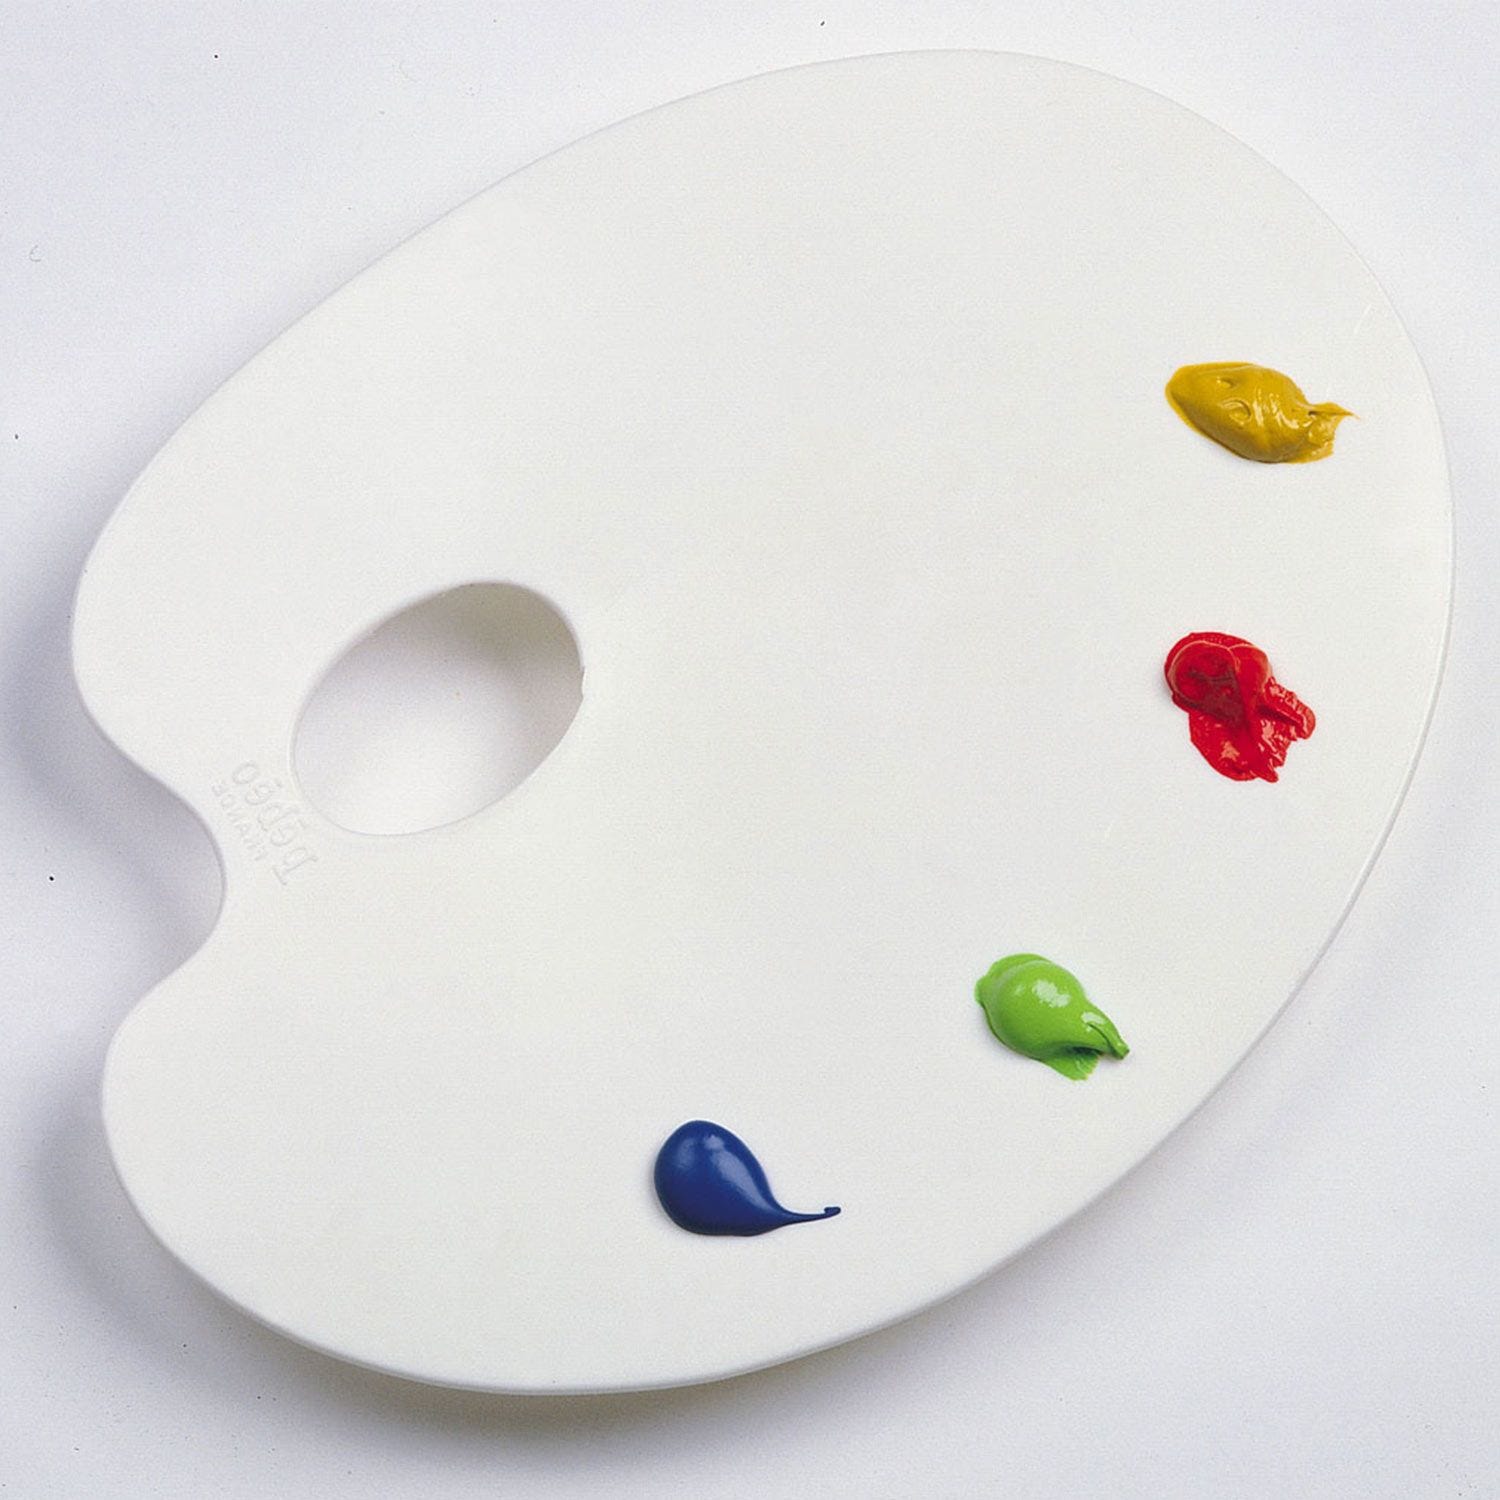 Tavolozza ovale in plastica per pittura